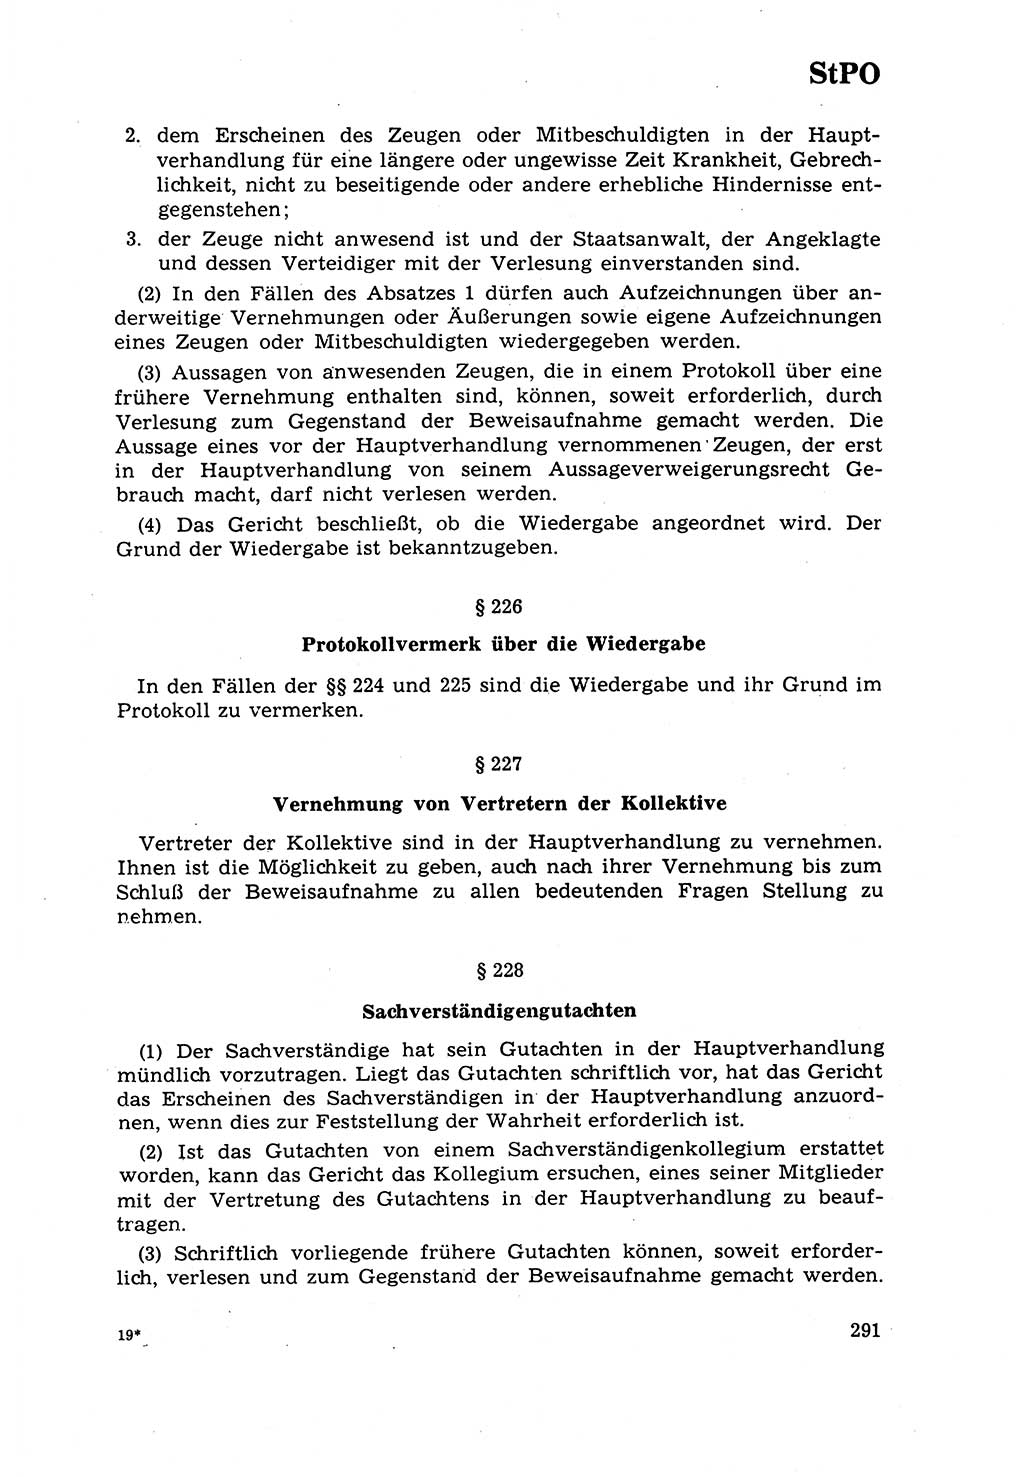 Strafrecht [Deutsche Demokratische Republik (DDR)] 1968, Seite 291 (Strafr. DDR 1968, S. 291)